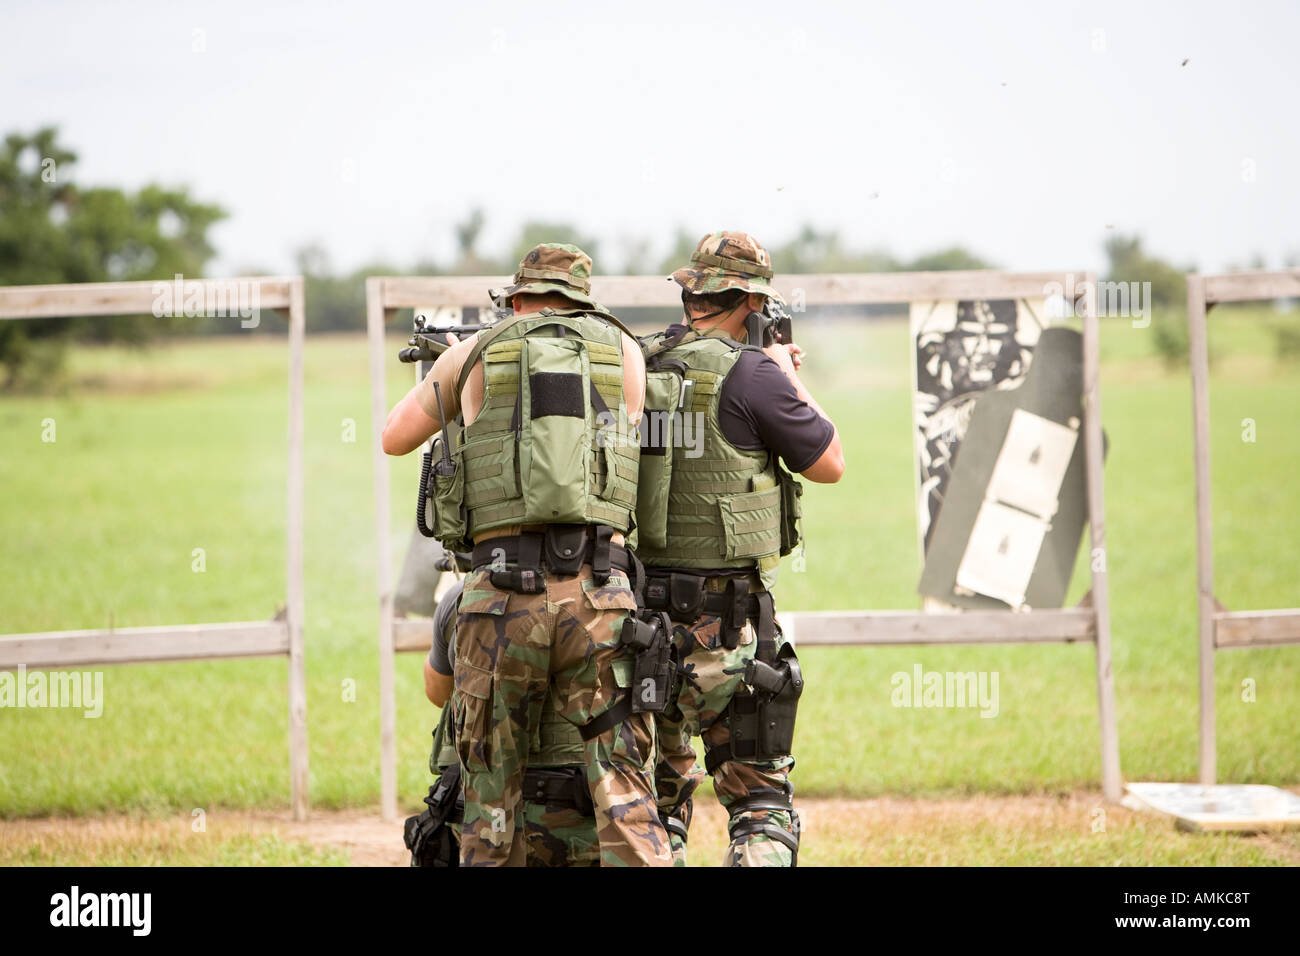 Les agents de tri au cours de tir de la formation. Trier, c'est comme prison SWAT et représente l'équipe d'intervention d'opérations spéciales. Banque D'Images